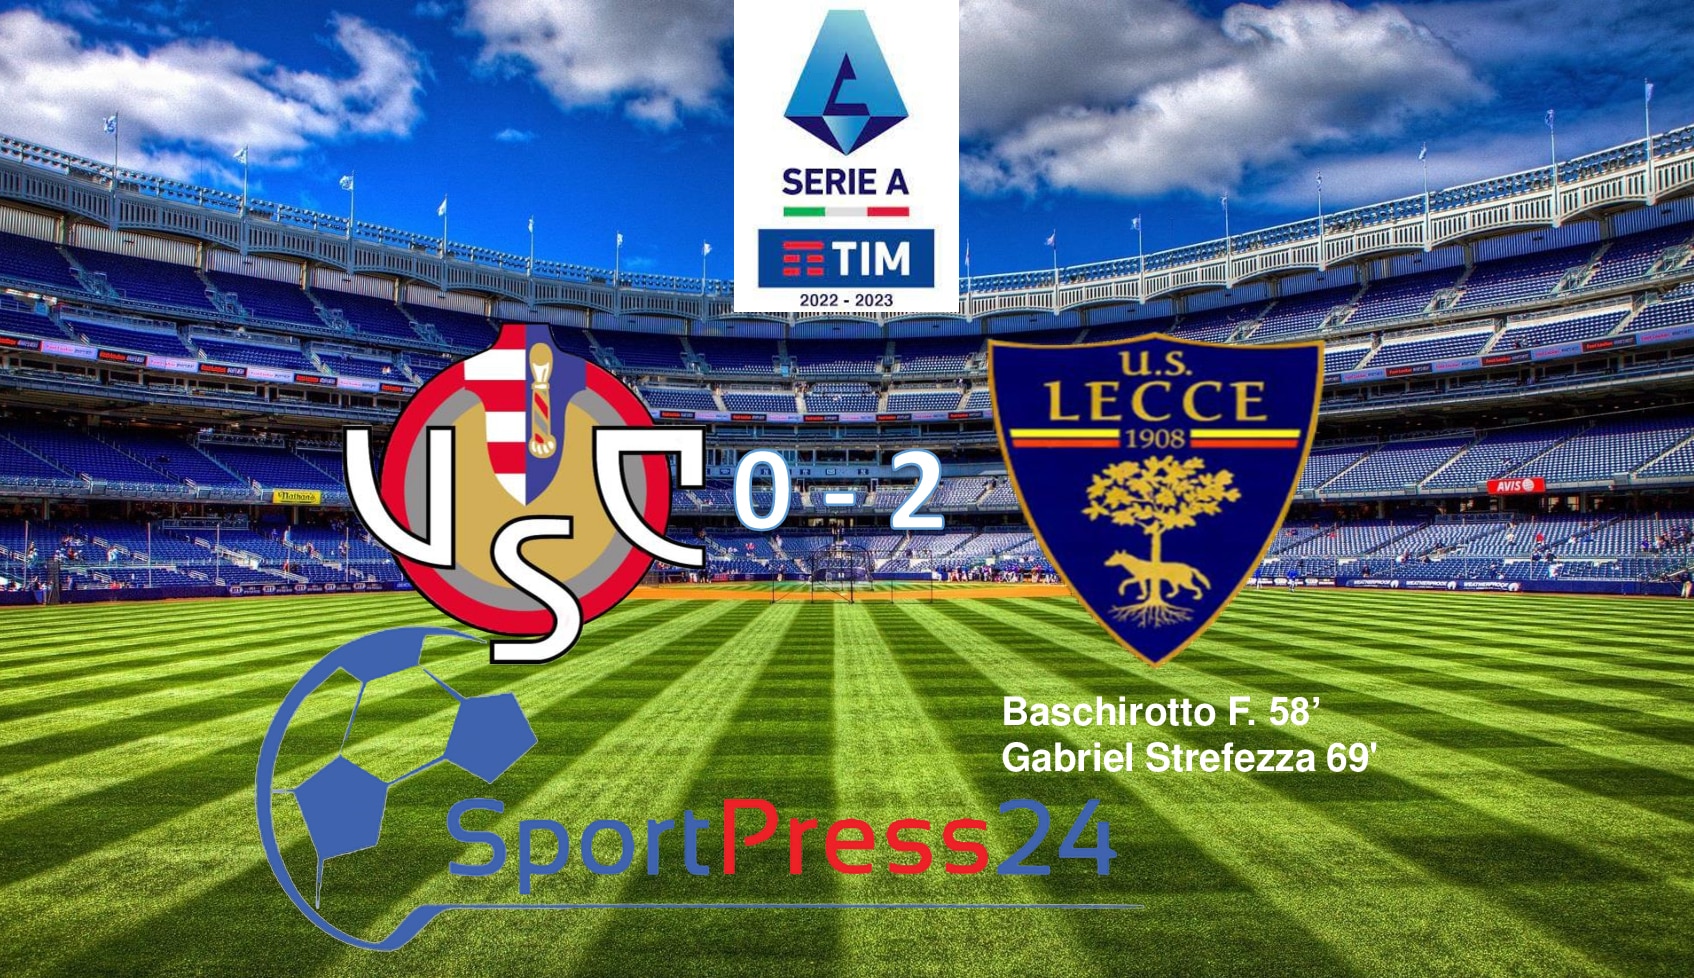 Cremonese-Lecce-0-2 (immagine a cura di Valerio Giuseppe Bellinghieri)